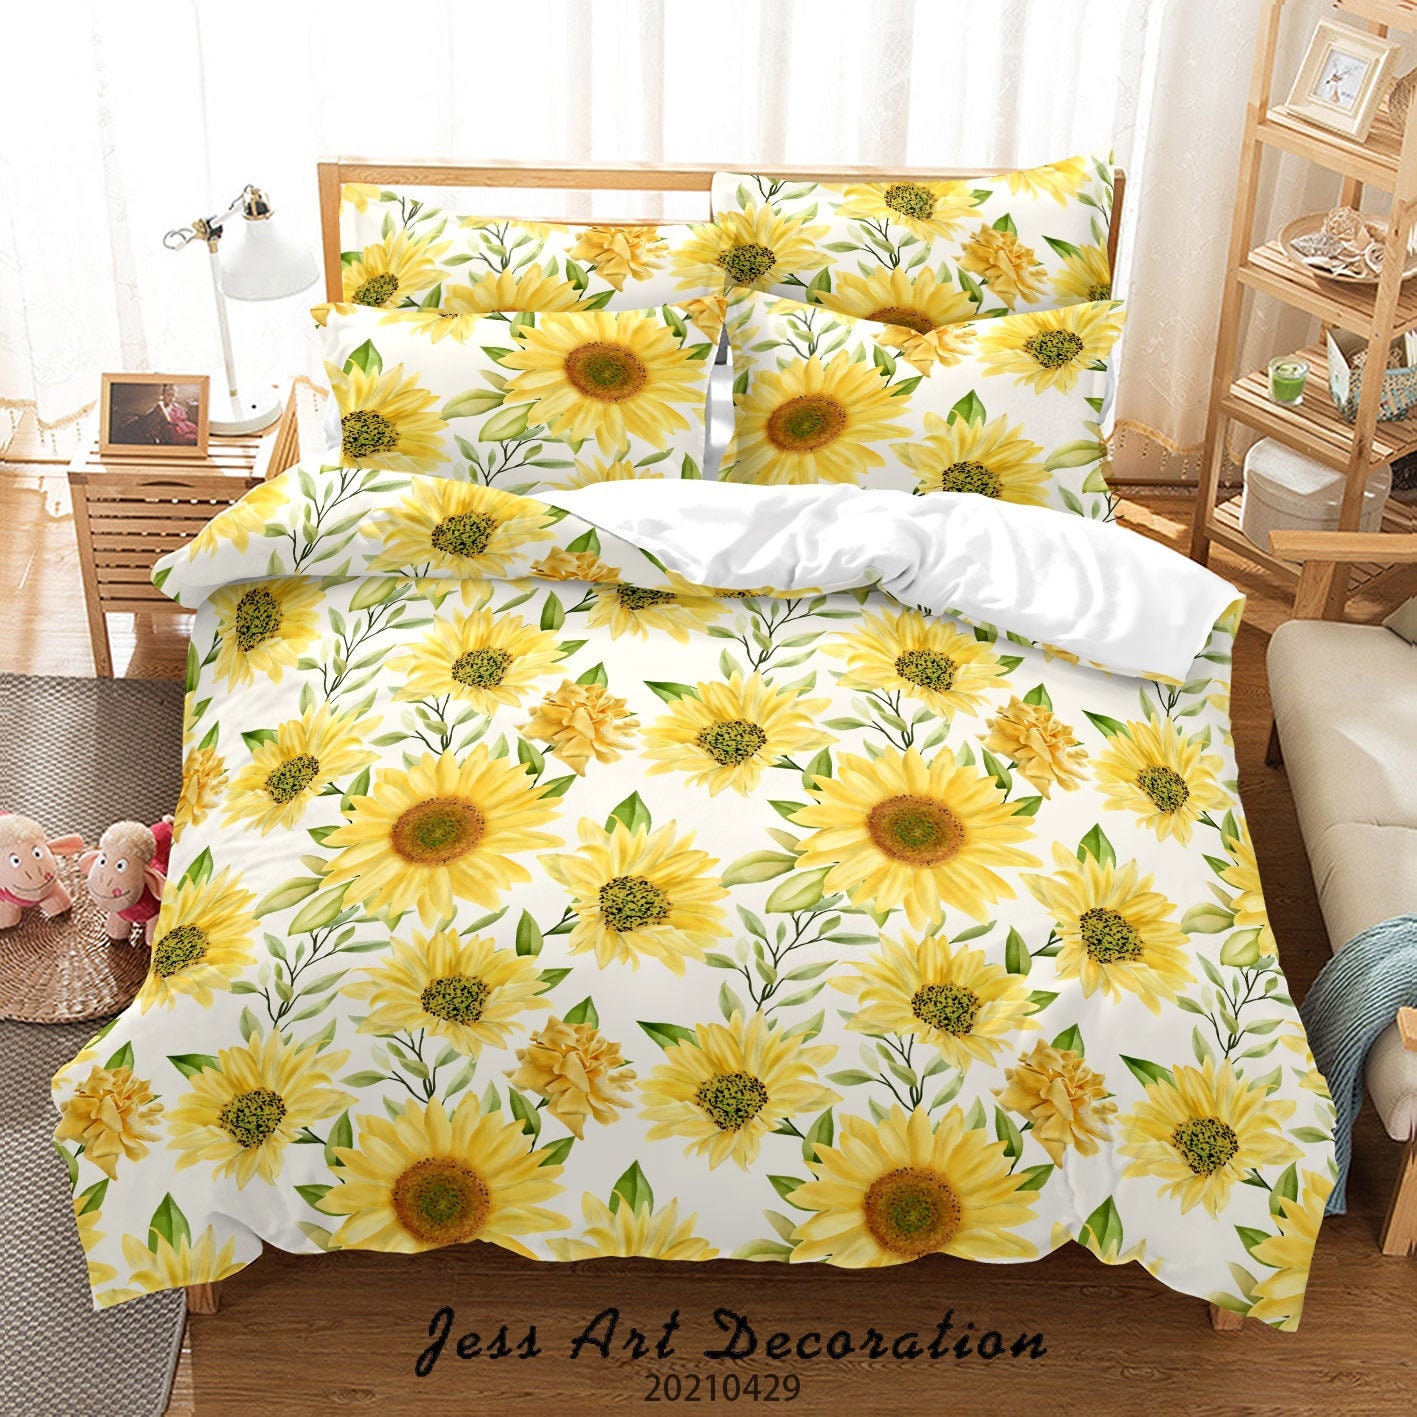 Bedbay King Size Sunflower Comforter Set Vintage Sunflower Bedding